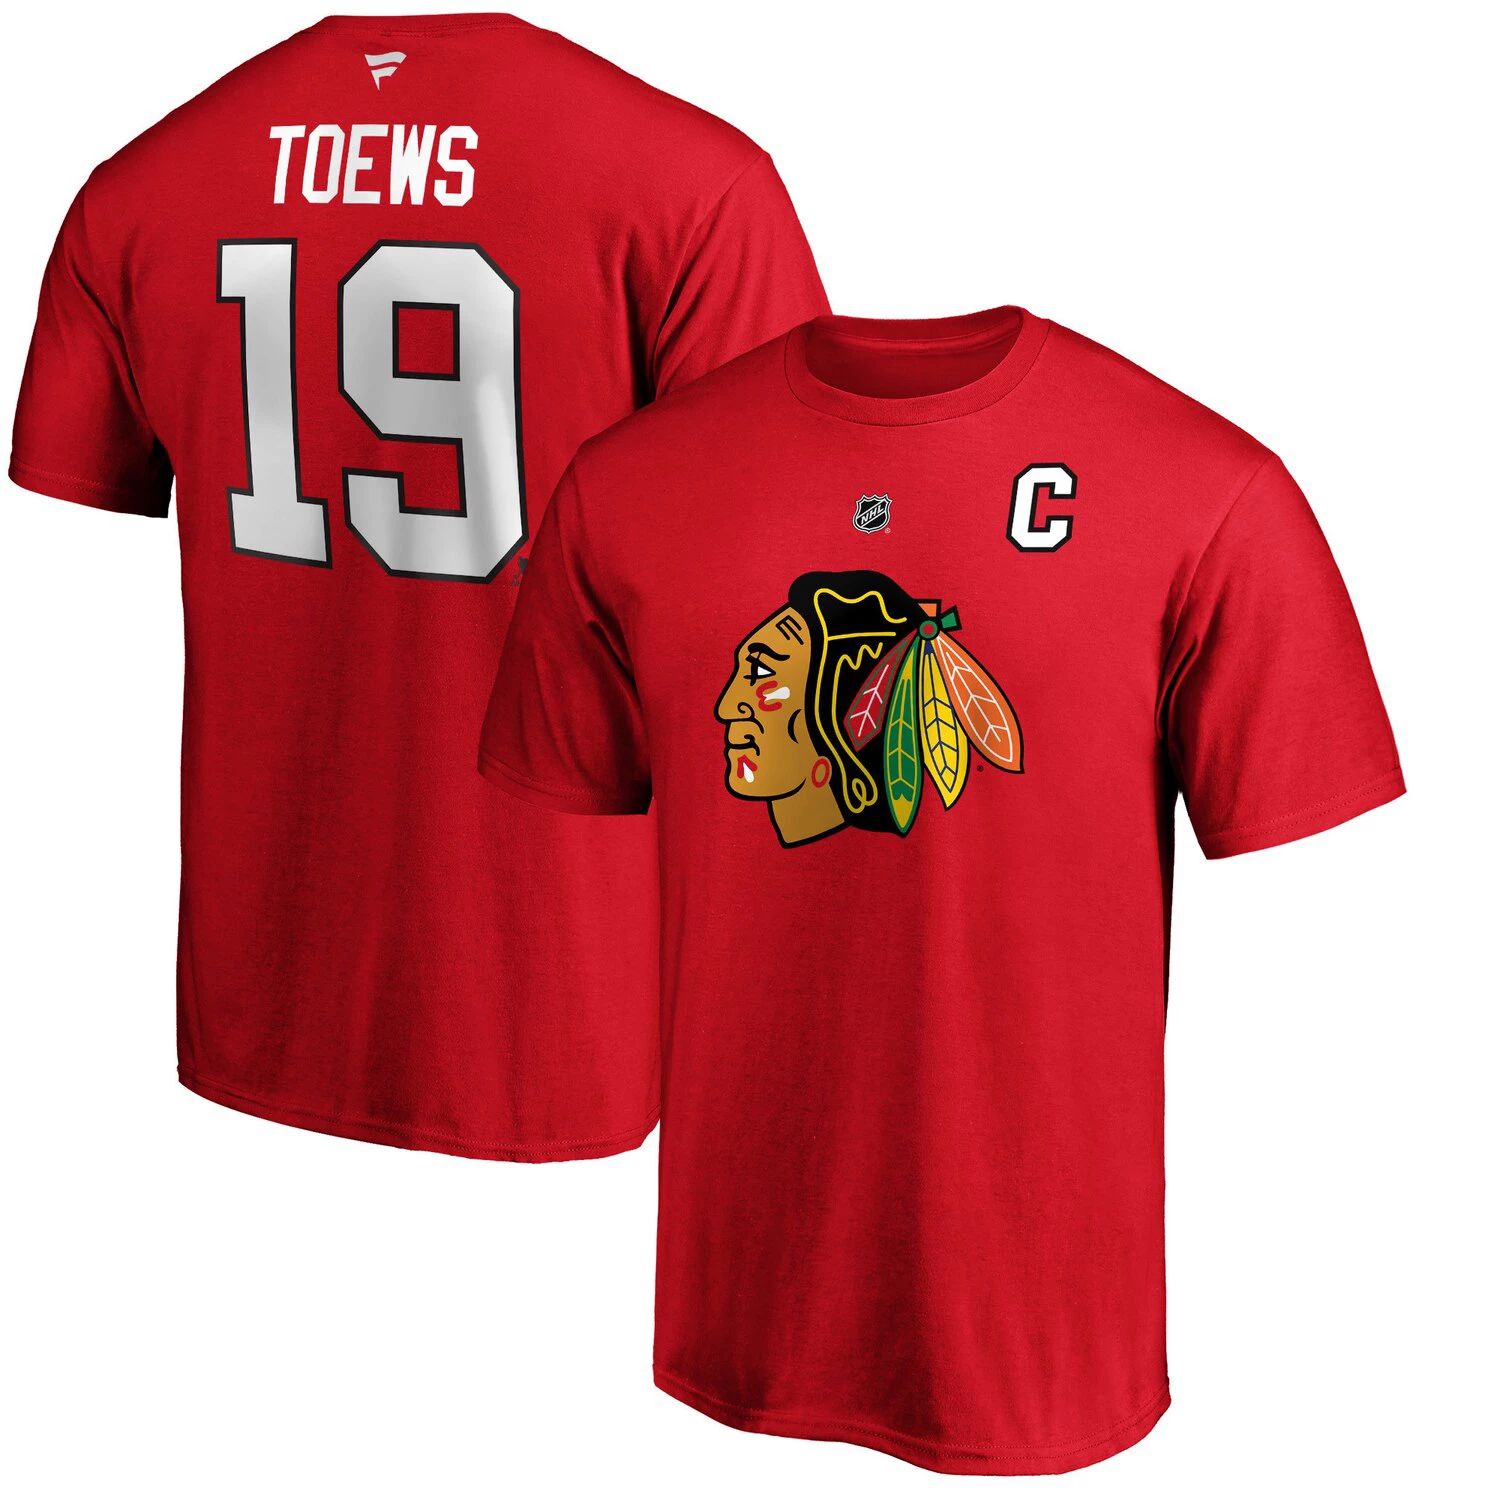 Мужская красная мужская футболка с именем и номером команды Chicago Blackhawks Jonathan Toews Team Fanatics